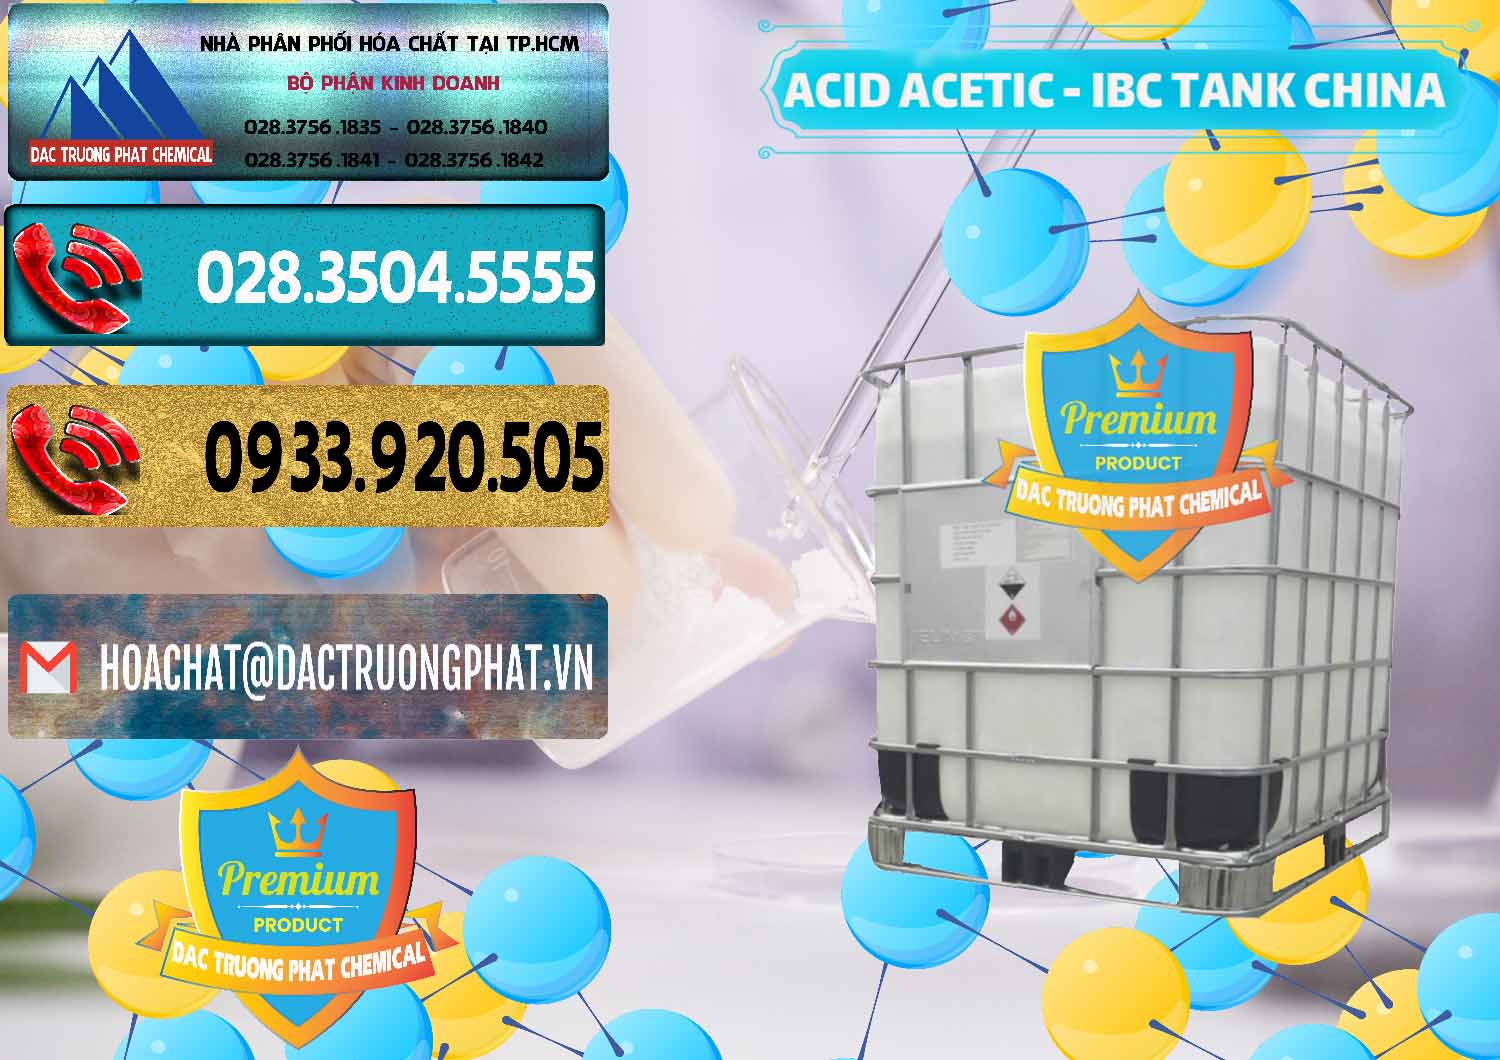 Cty chuyên bán - phân phối Acetic Acid – Axit Acetic Tank Bồn IBC Trung Quốc China - 0443 - Nơi bán ( cung cấp ) hóa chất tại TP.HCM - hoachatdetnhuom.com